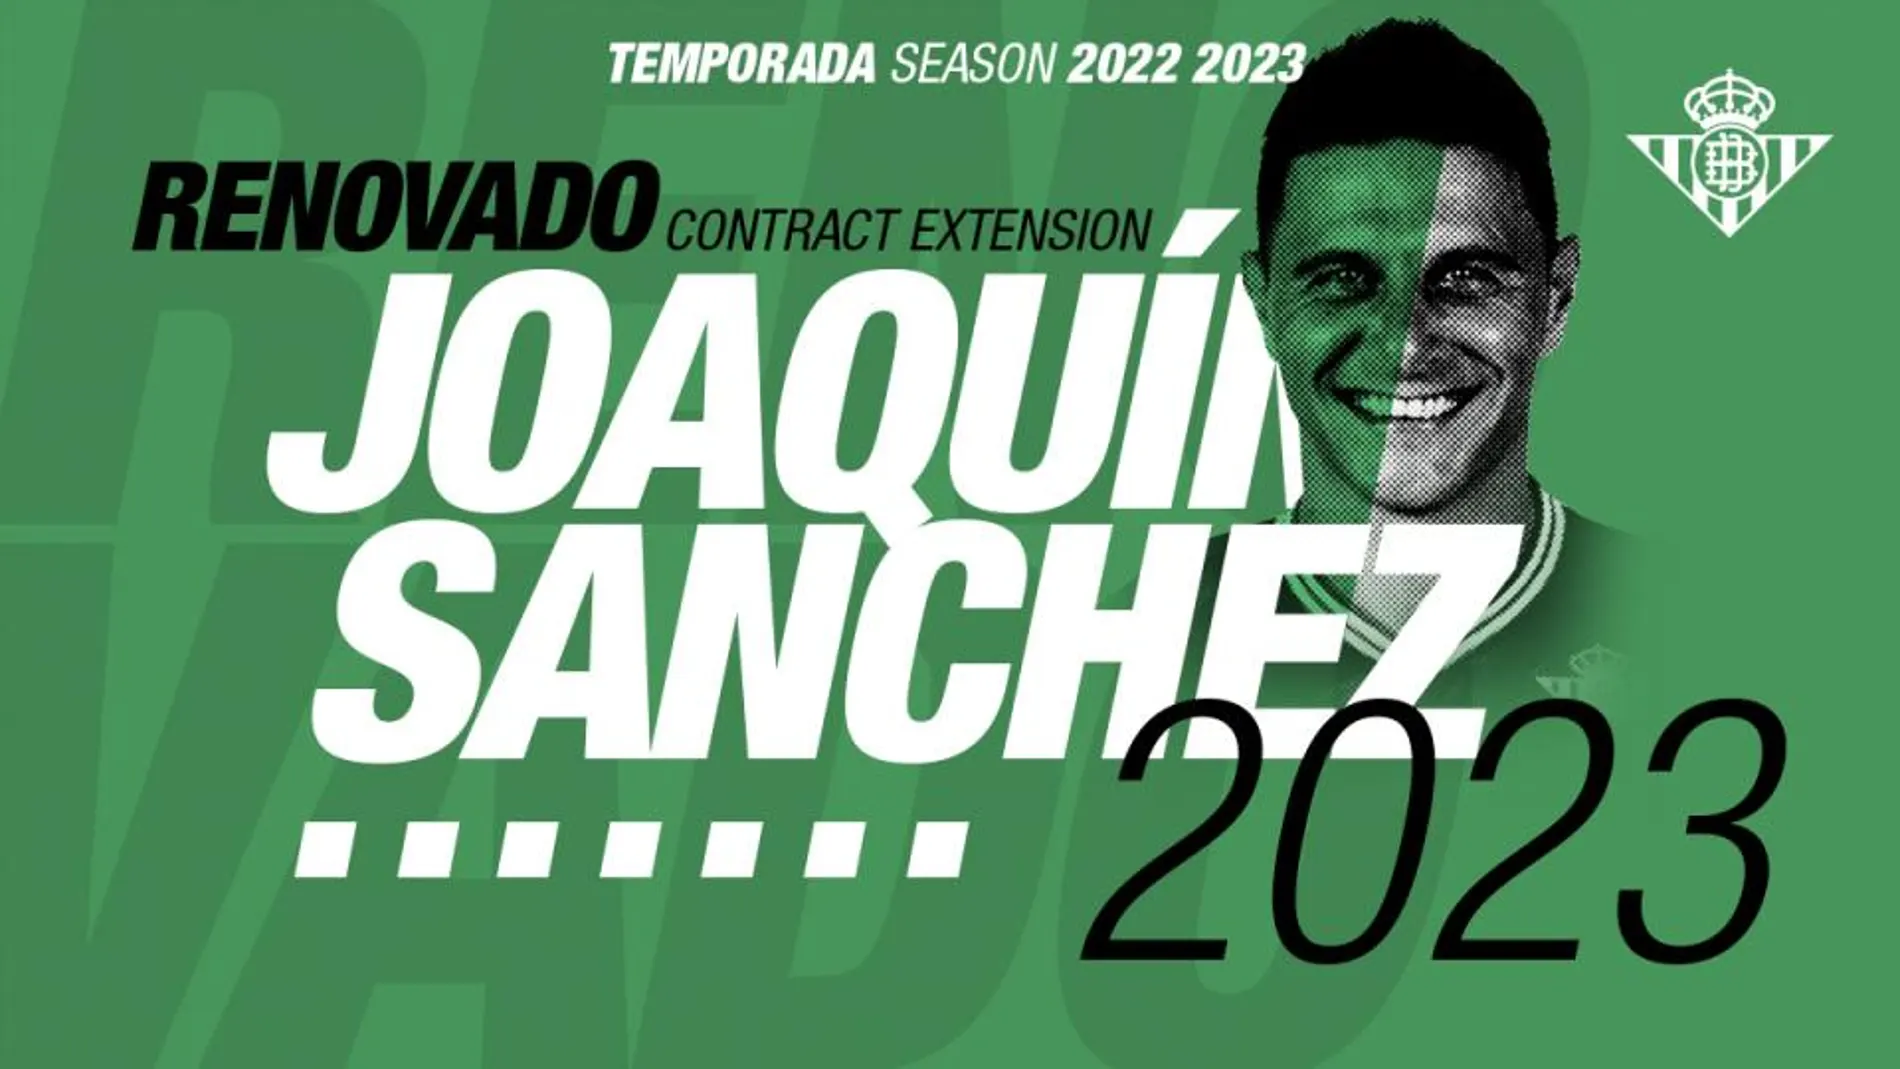 Joaquín renueva con el Betis hasta 2023